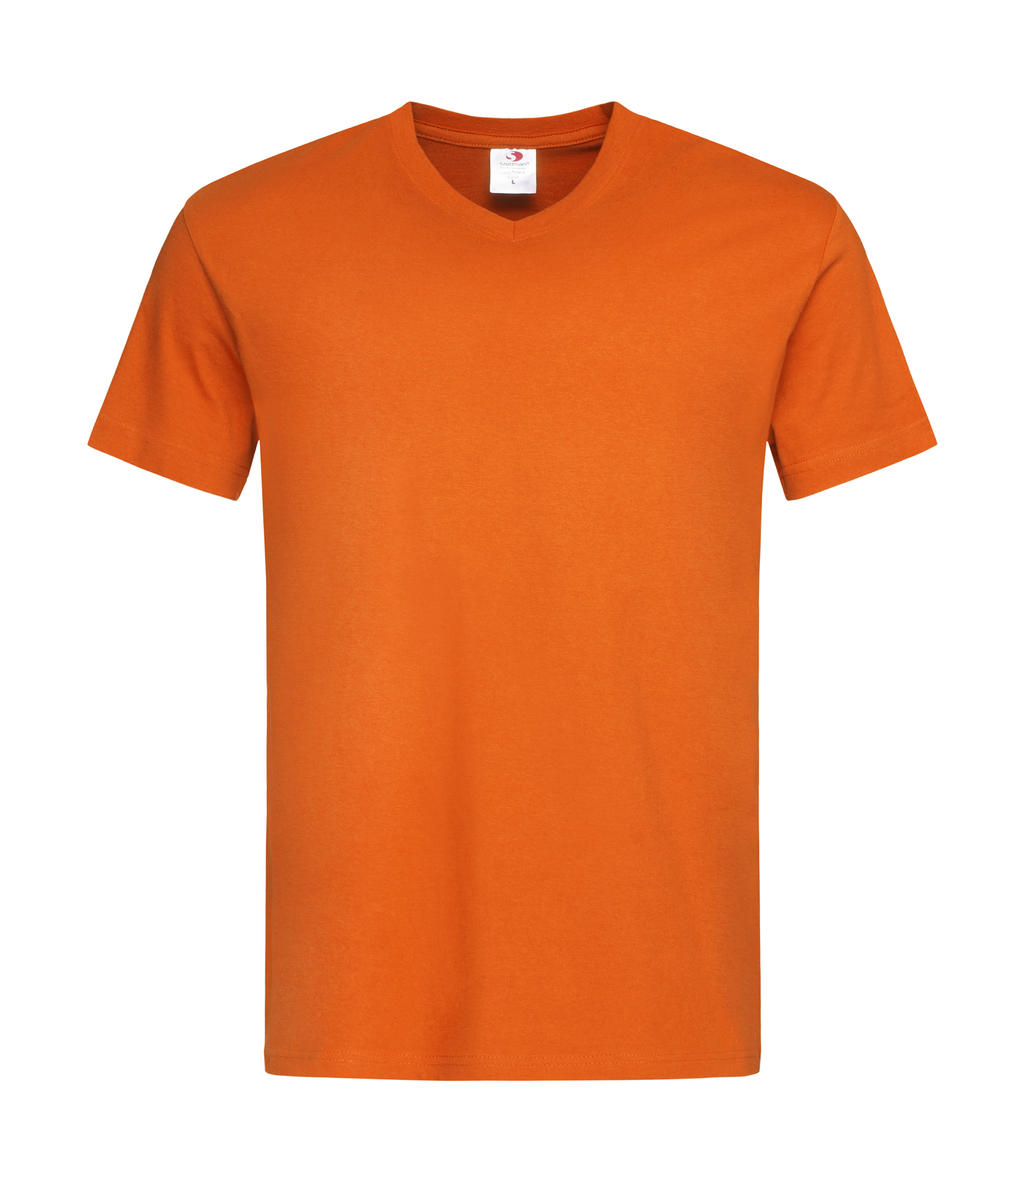  Classic-T V-Neck in Farbe Orange